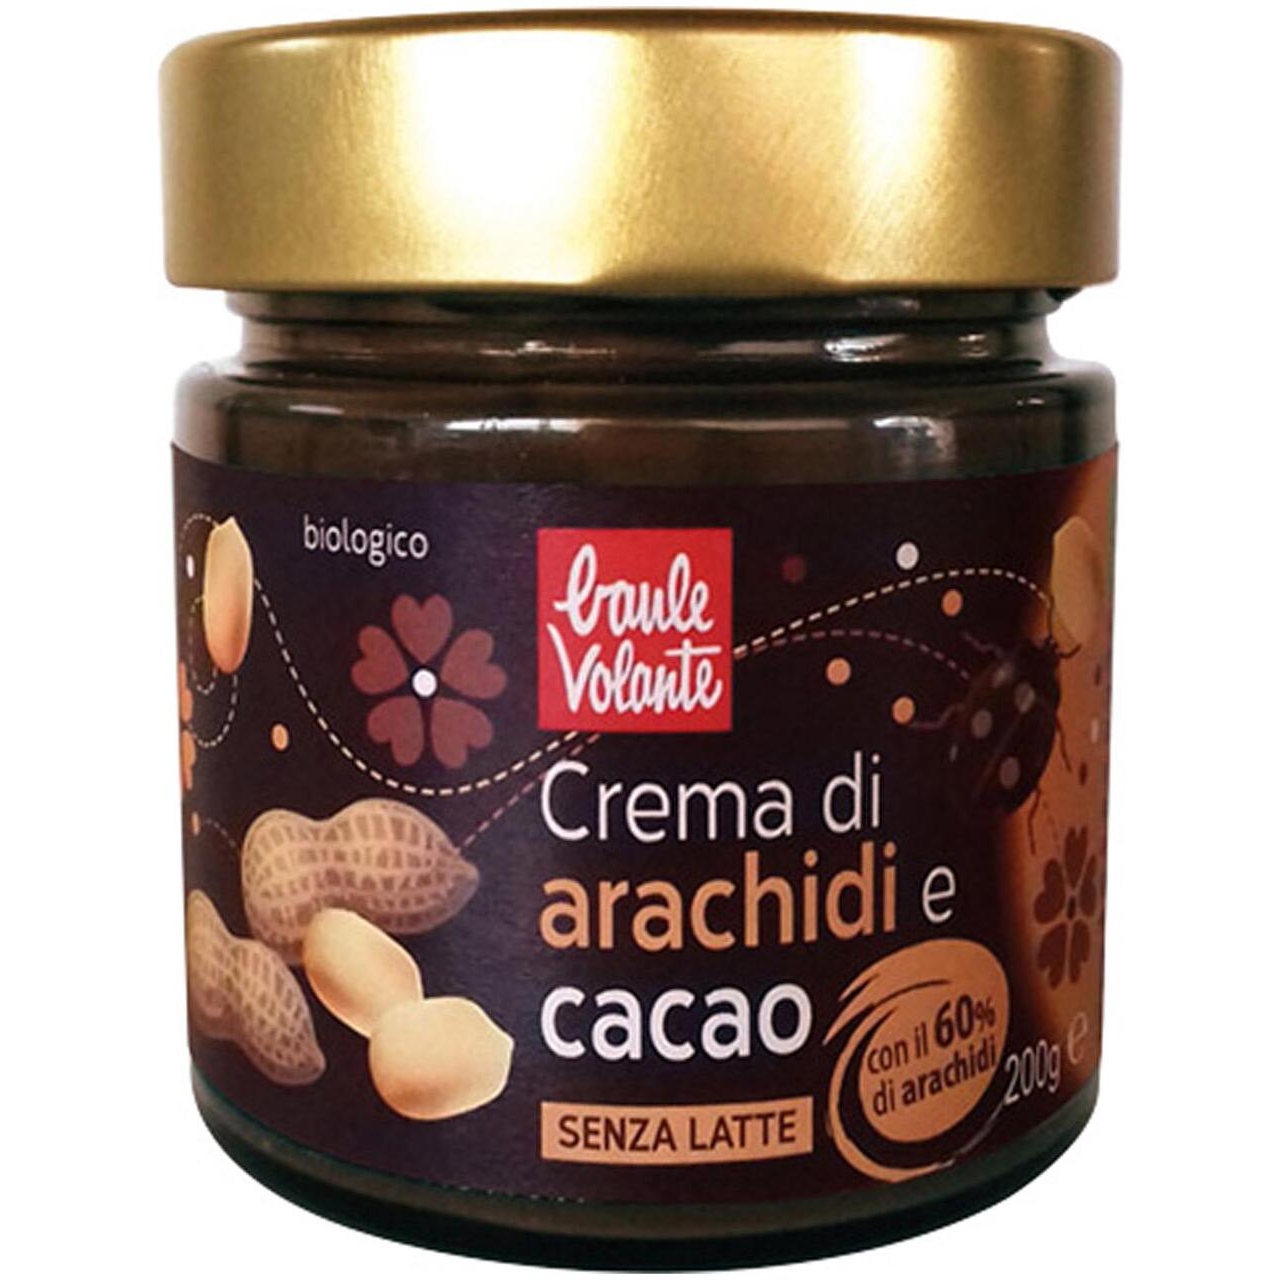 Crema arachidi e cacao